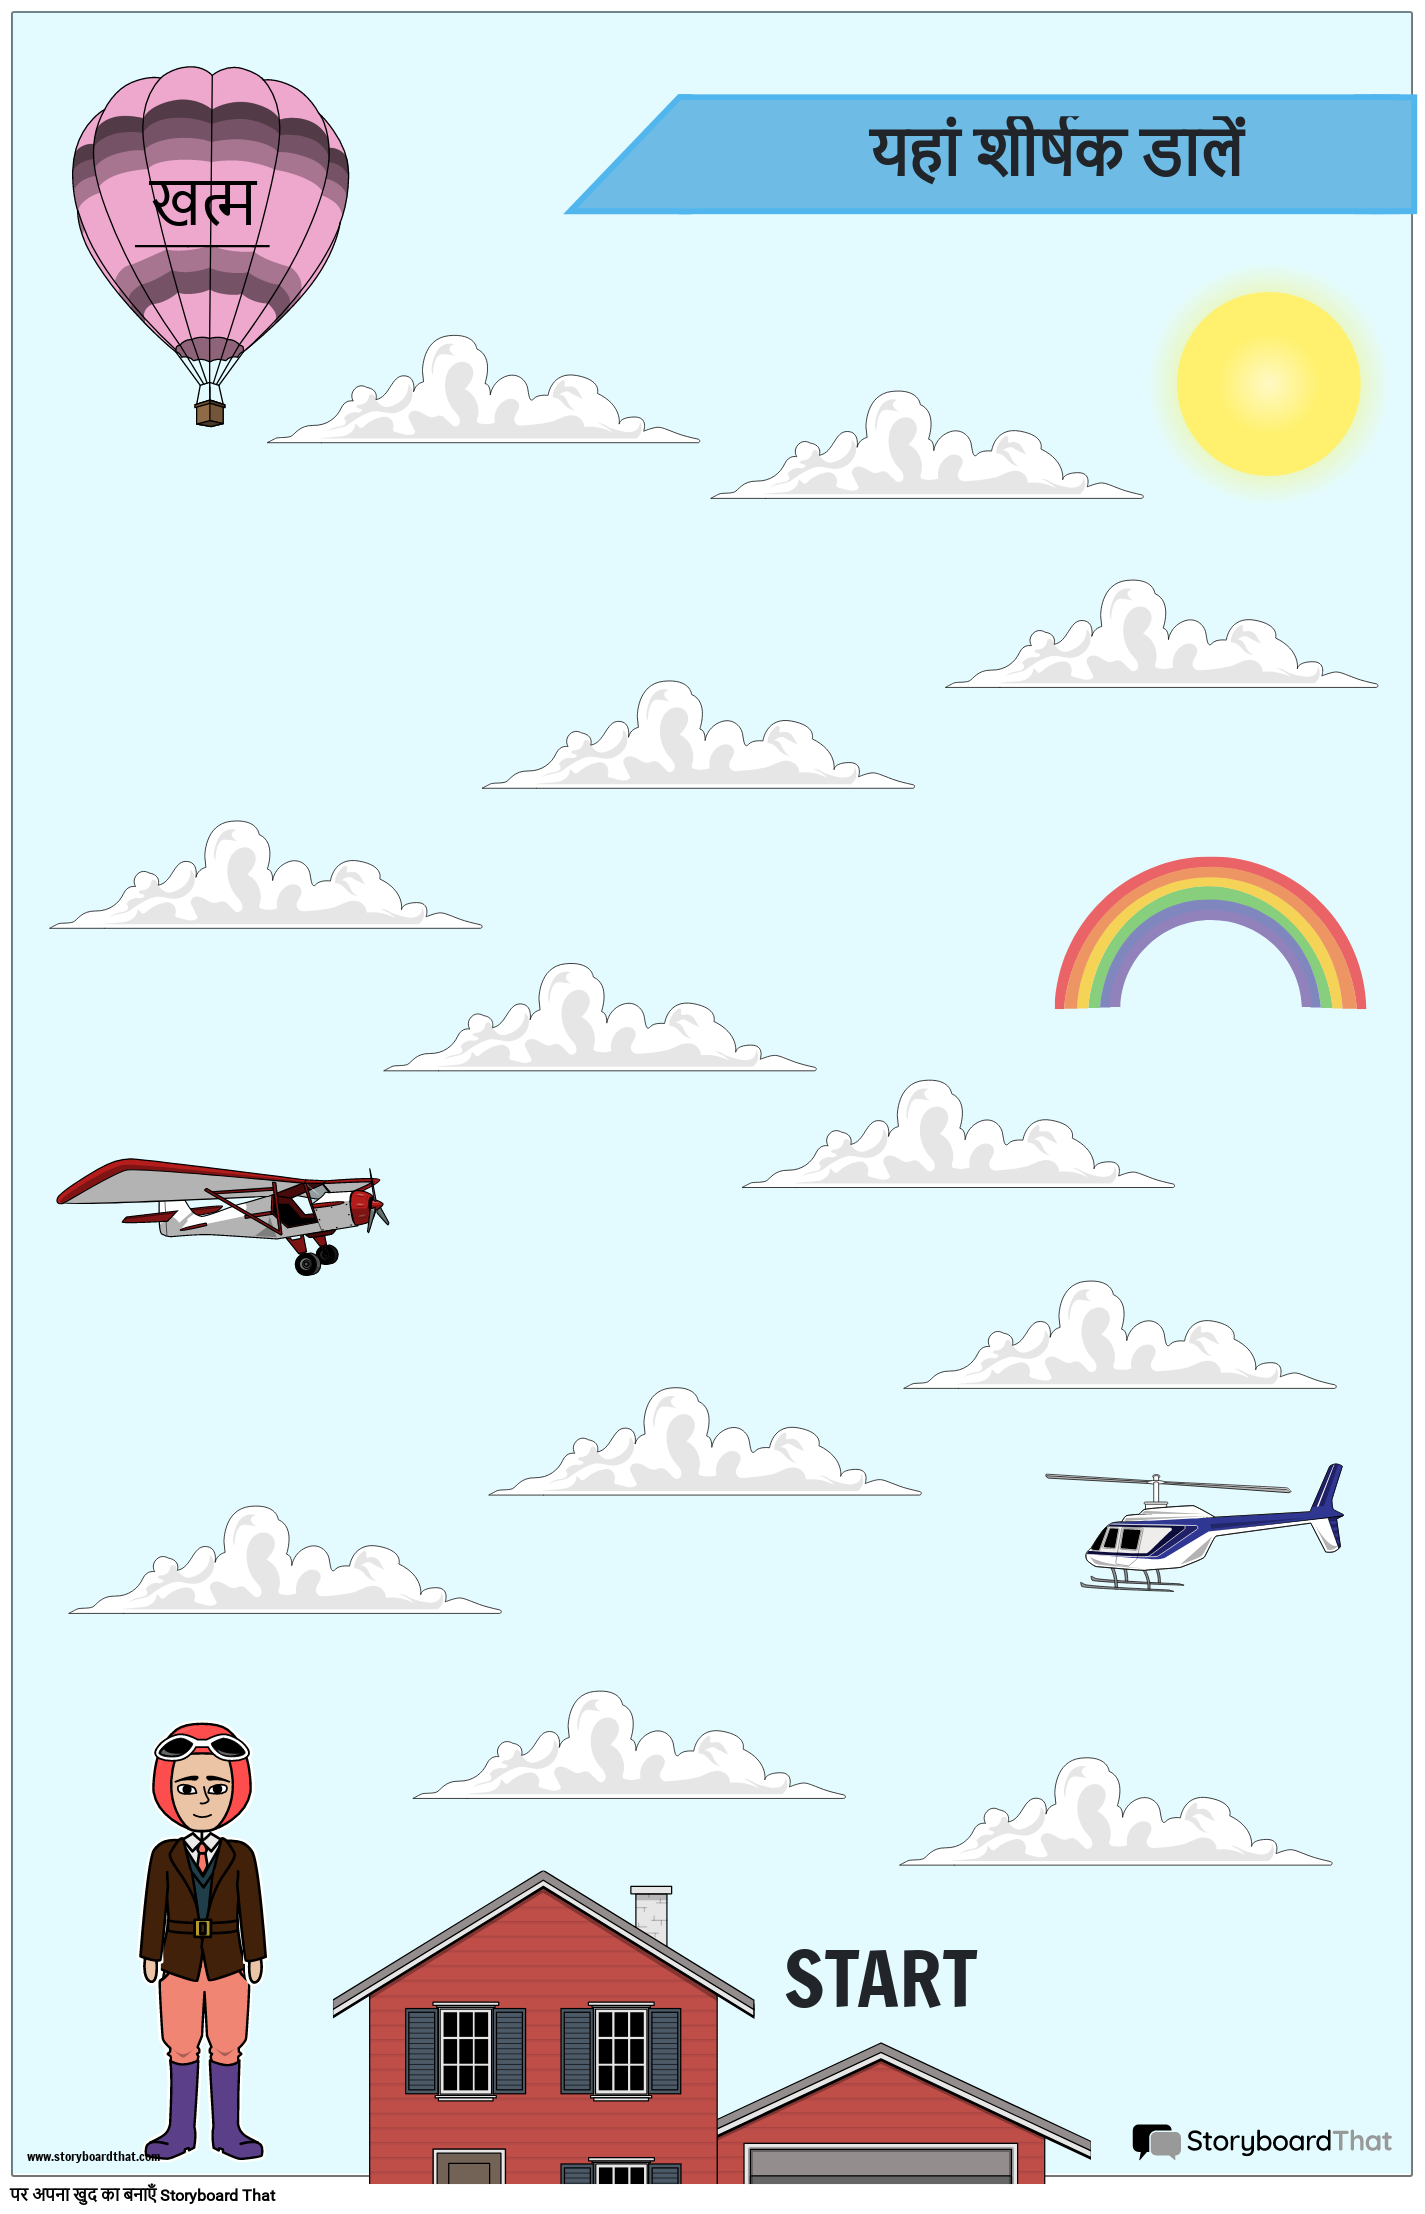 हॉट एयर बैलून स्काई एडवेंचर गेम